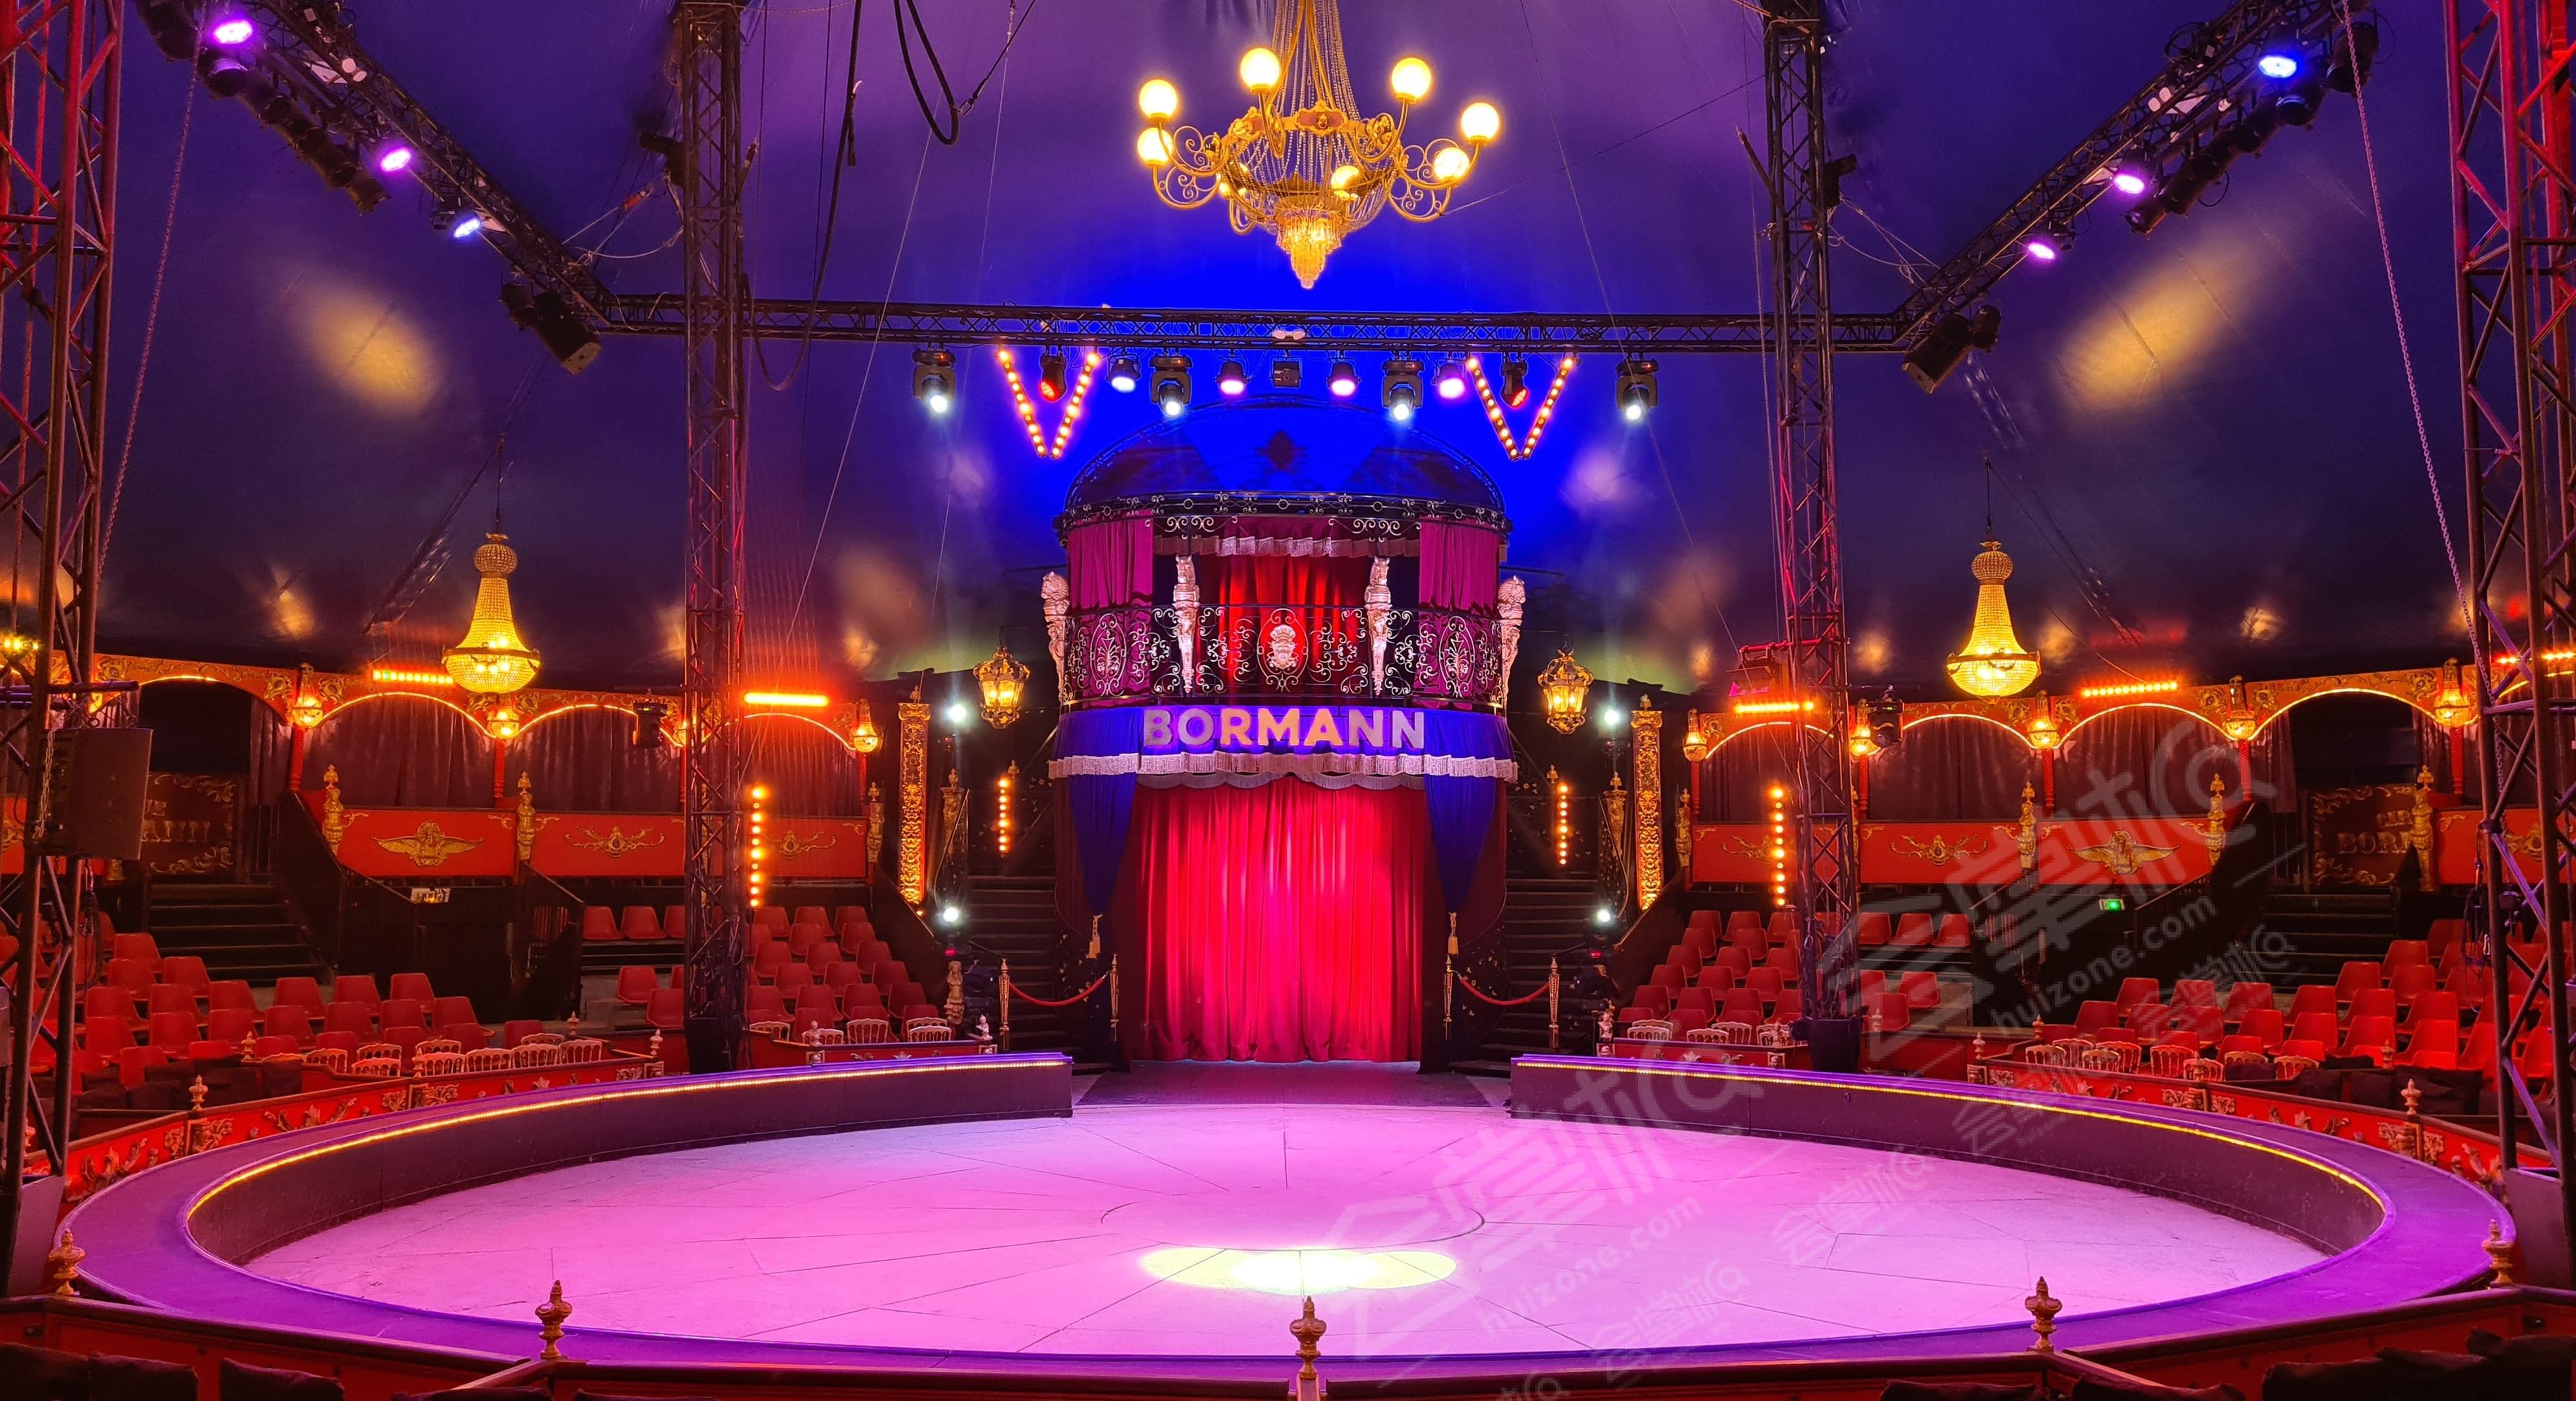 Lieu de réception incroyable dans un cirque permanent privatisable - Paris 15ème